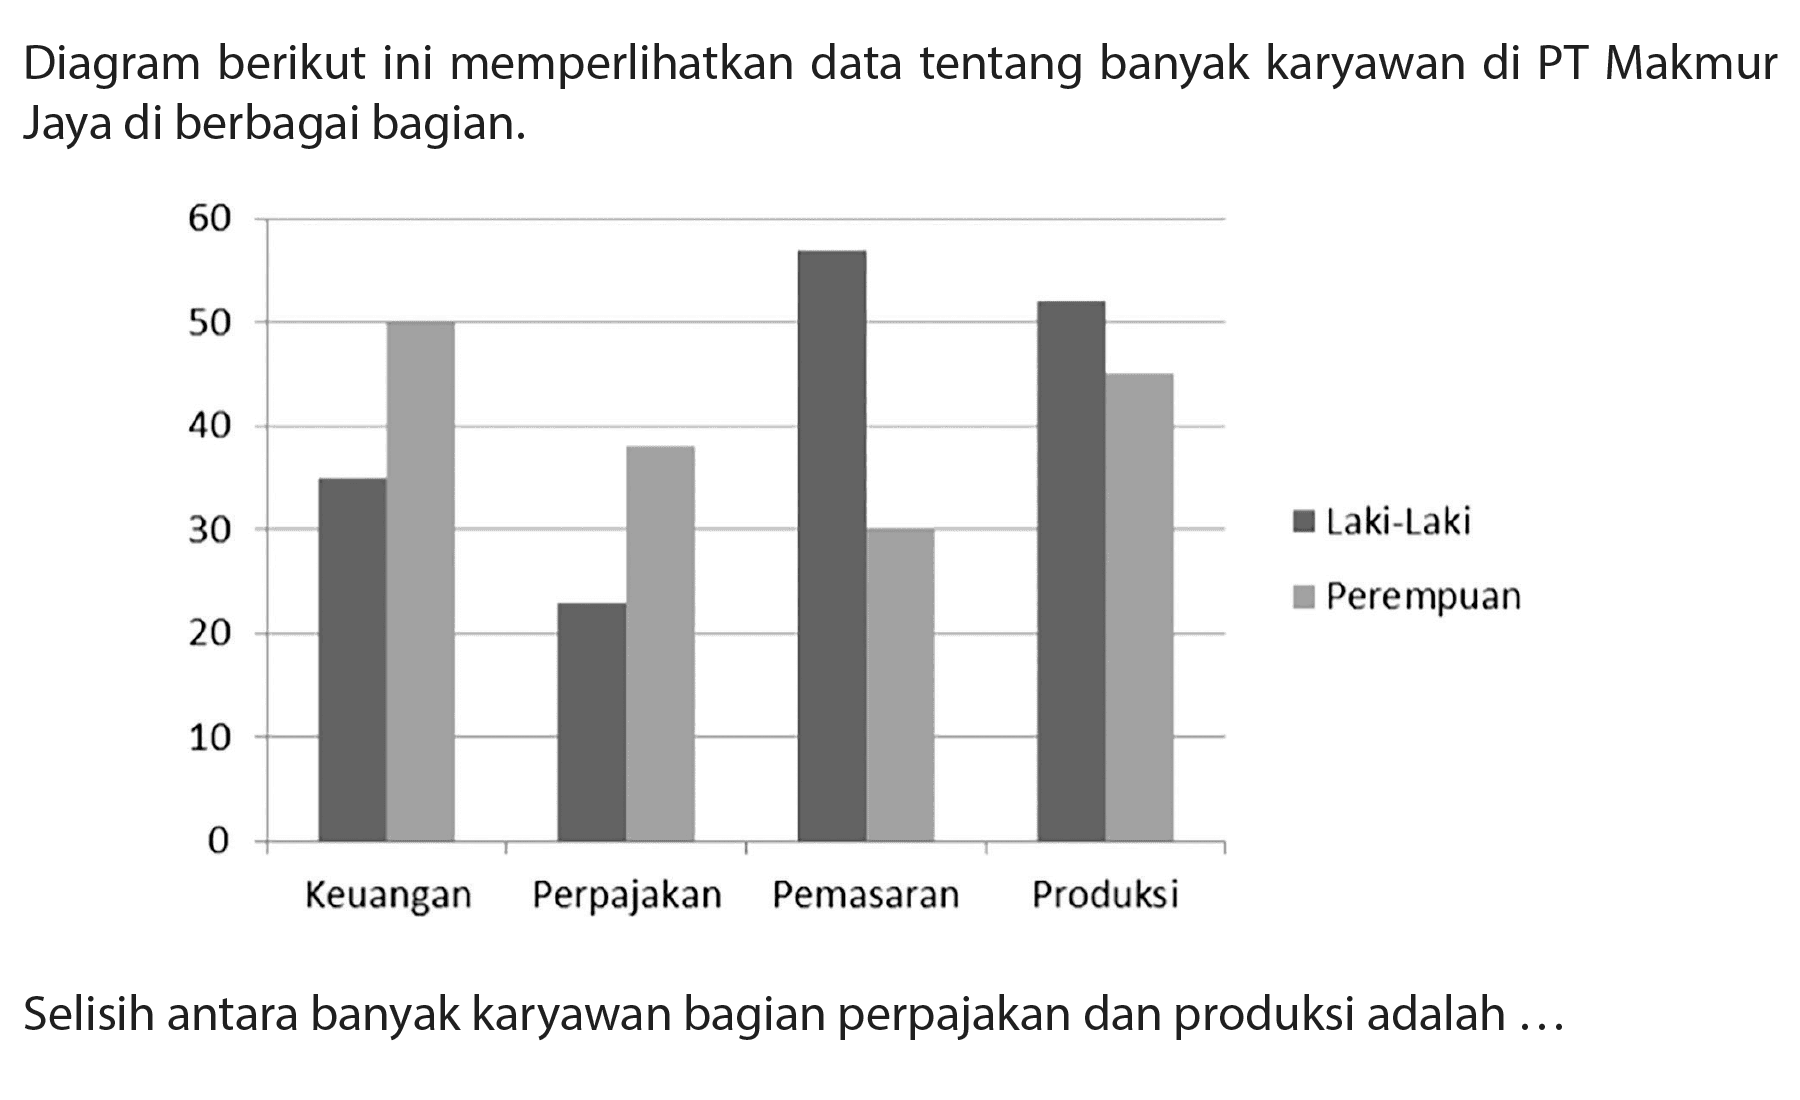 Diagram berikut ini memperlihatkan data tentang banyak karyawan di PT Makmur Jaya di berbagai bagian.
Selisih antara banyak karyawan bagian perpajakan dan produksi adalah ...